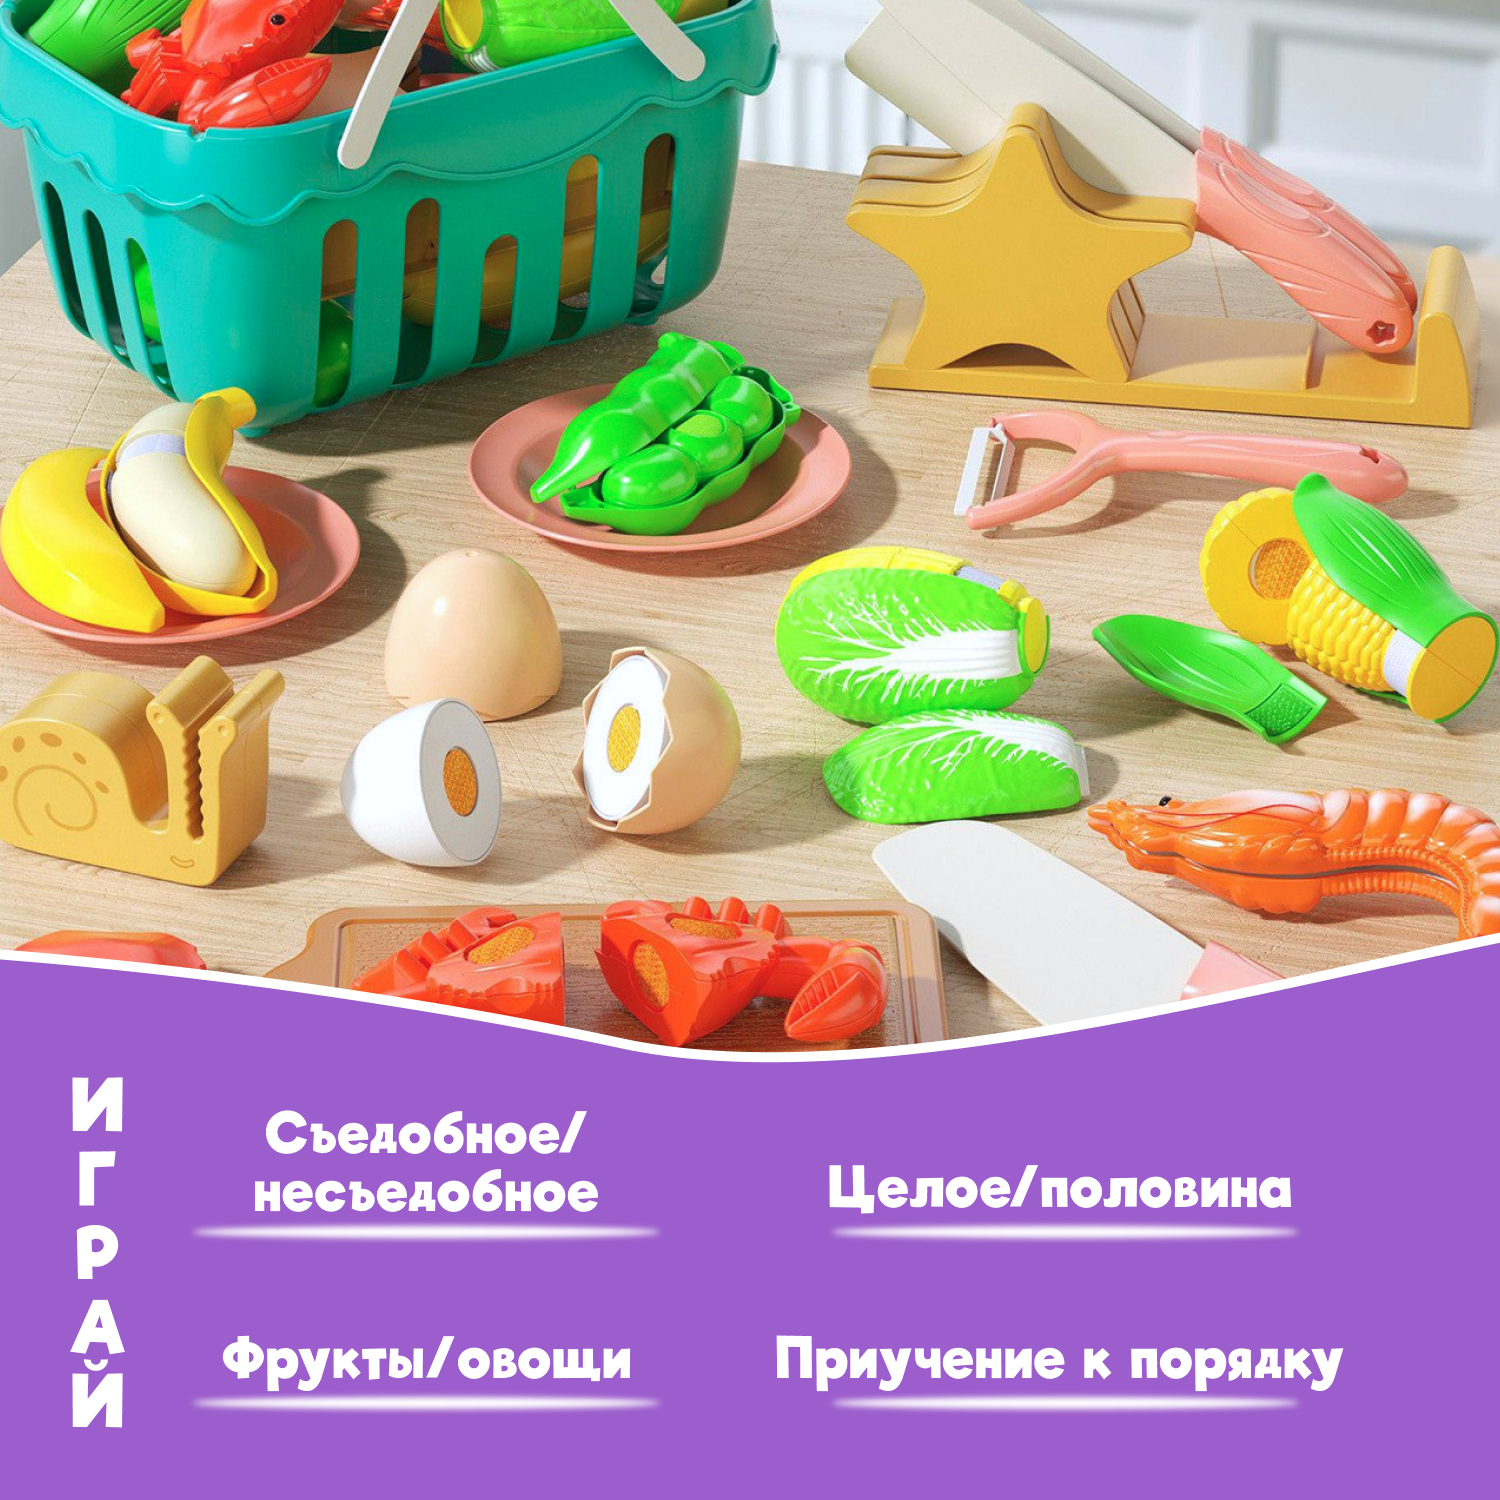 Игровой набор Leylek. Фрукты и овощи 17 предметов - фото 5